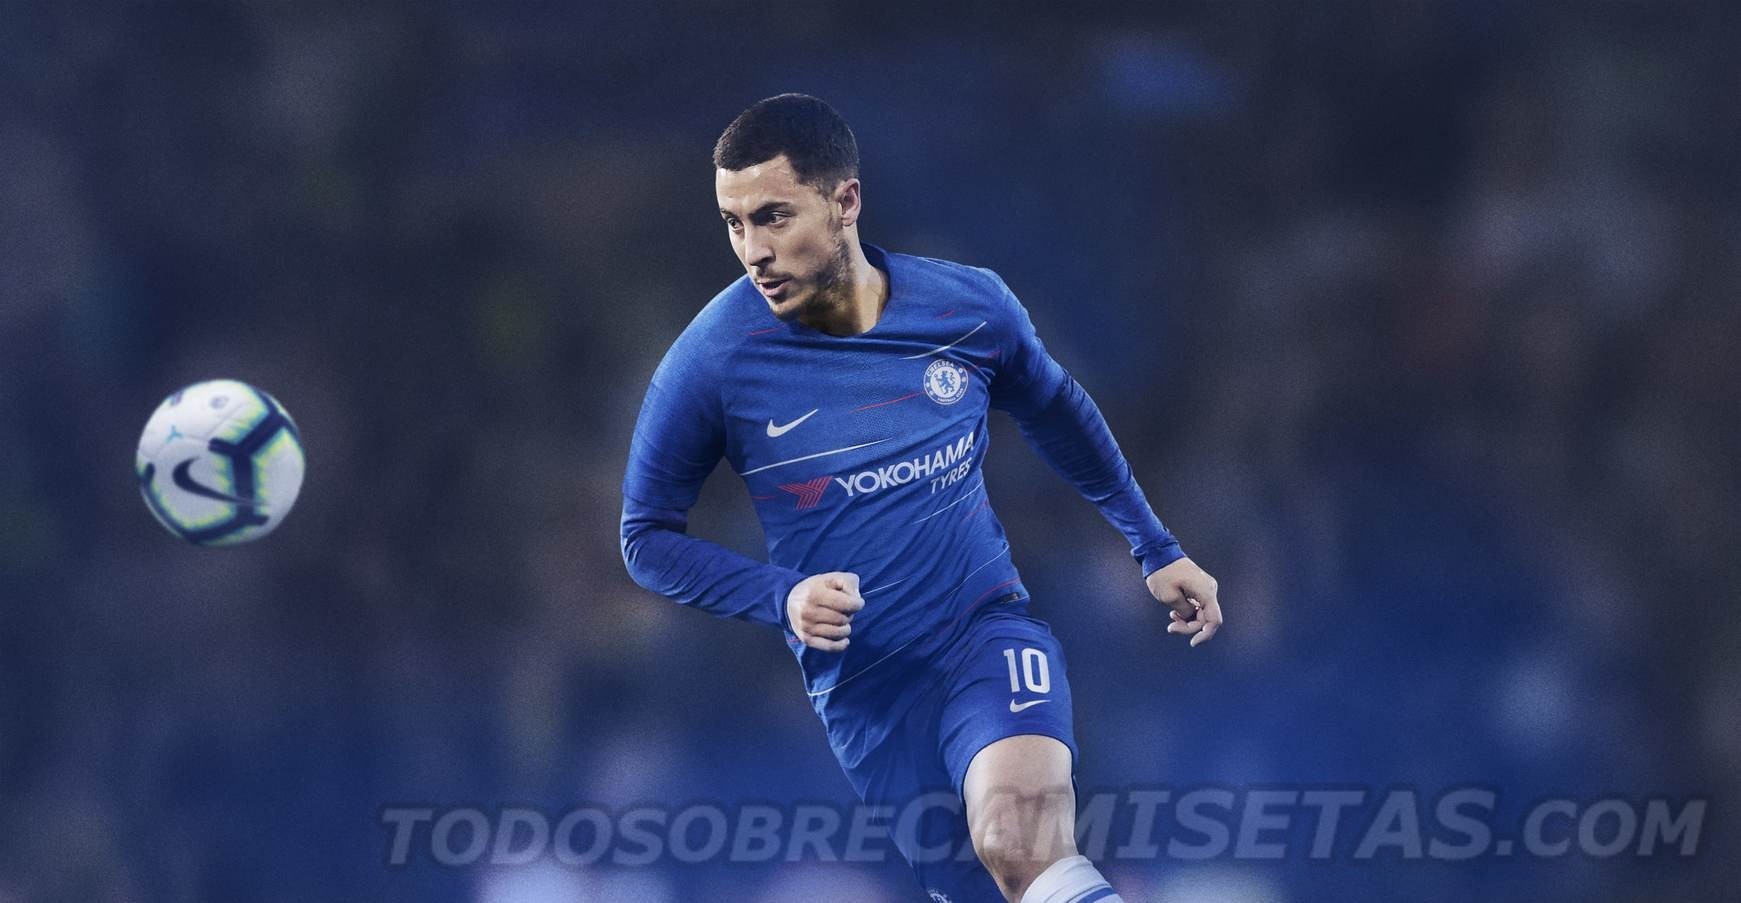 Chelsea 2018/19 Nike Home Kit